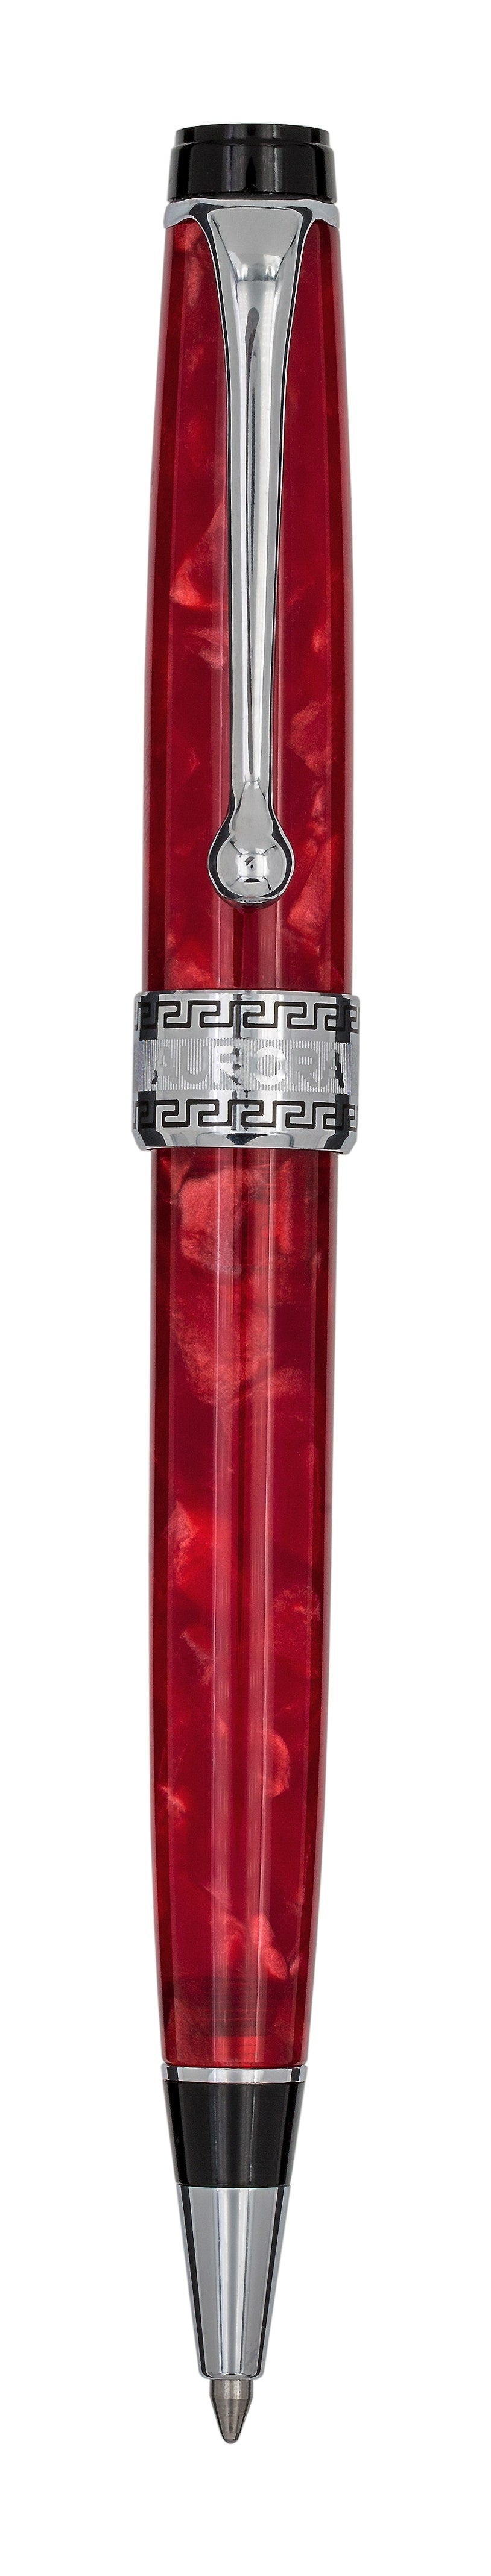 Aurora Optima Red with Chrome Trims Ballpoint Pen